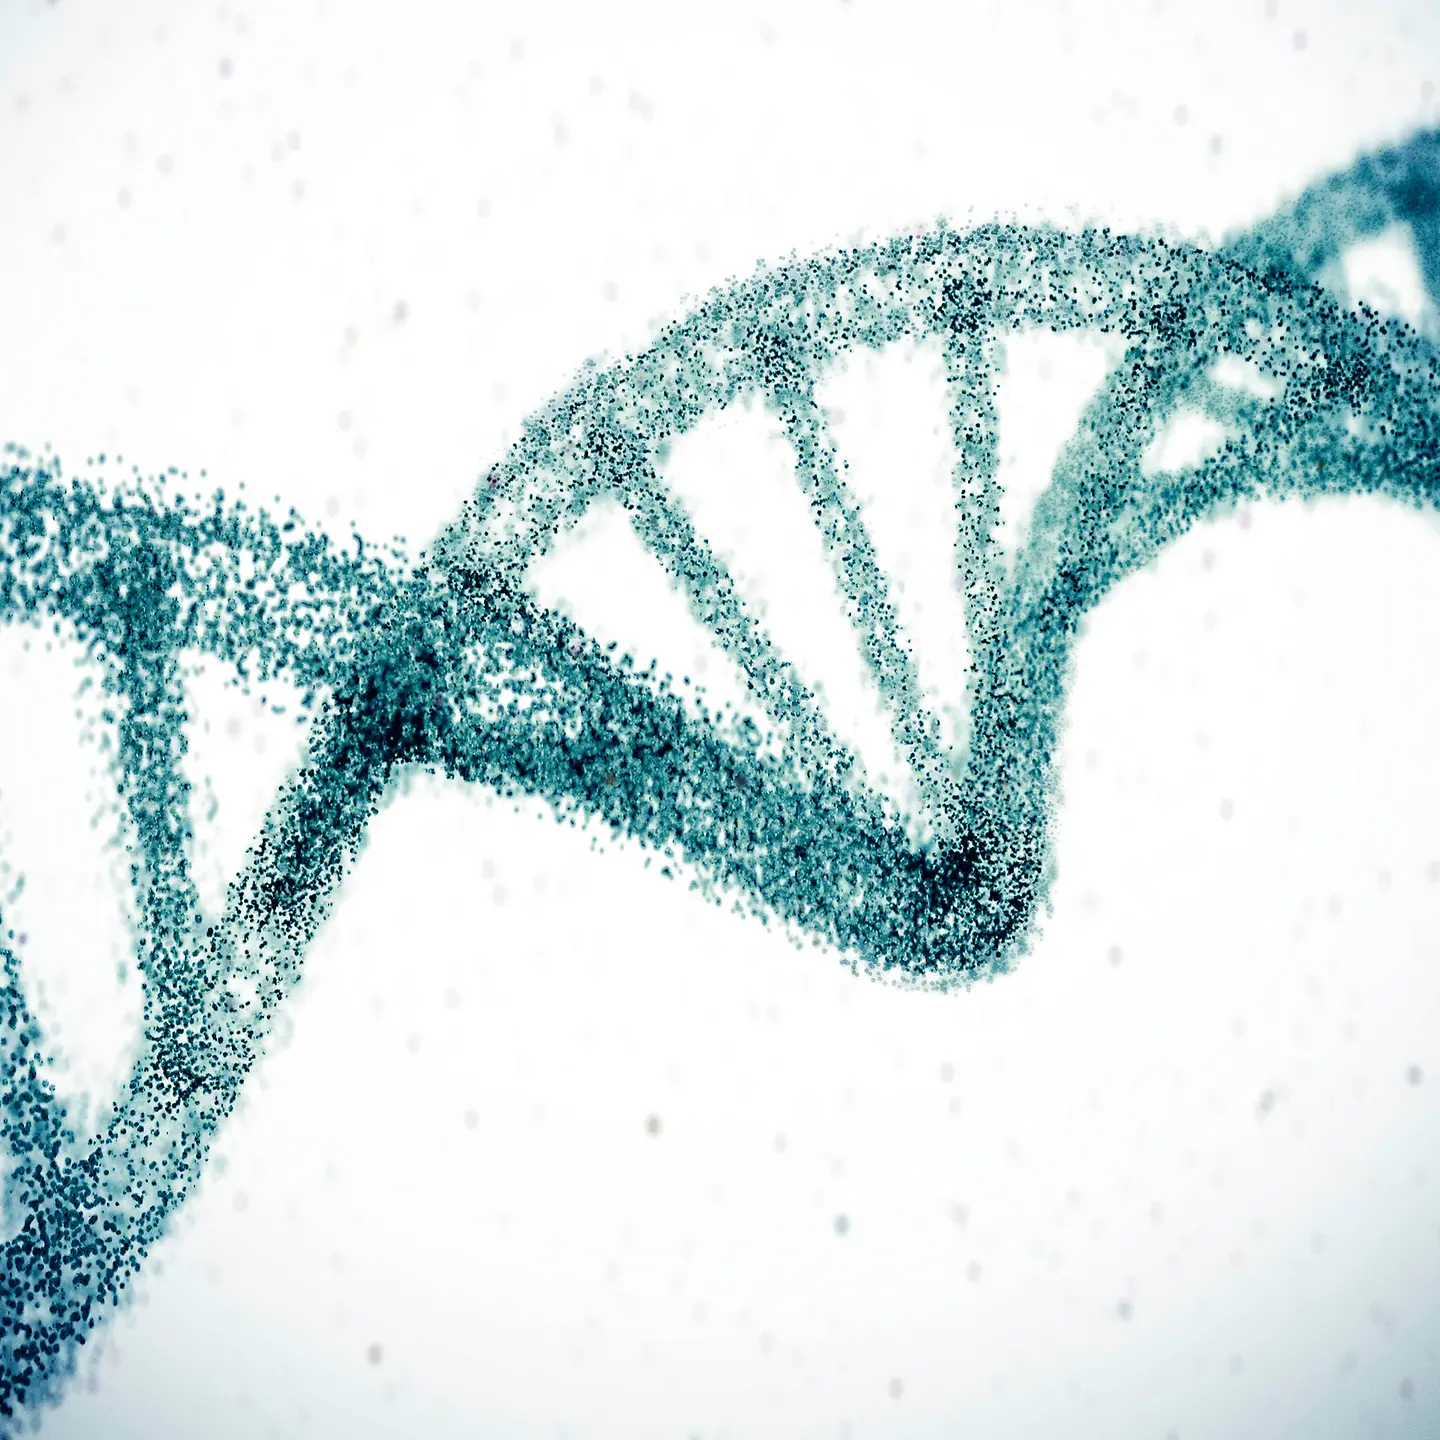 Stilisierte Darstellung einer DNA-Doppelhelix